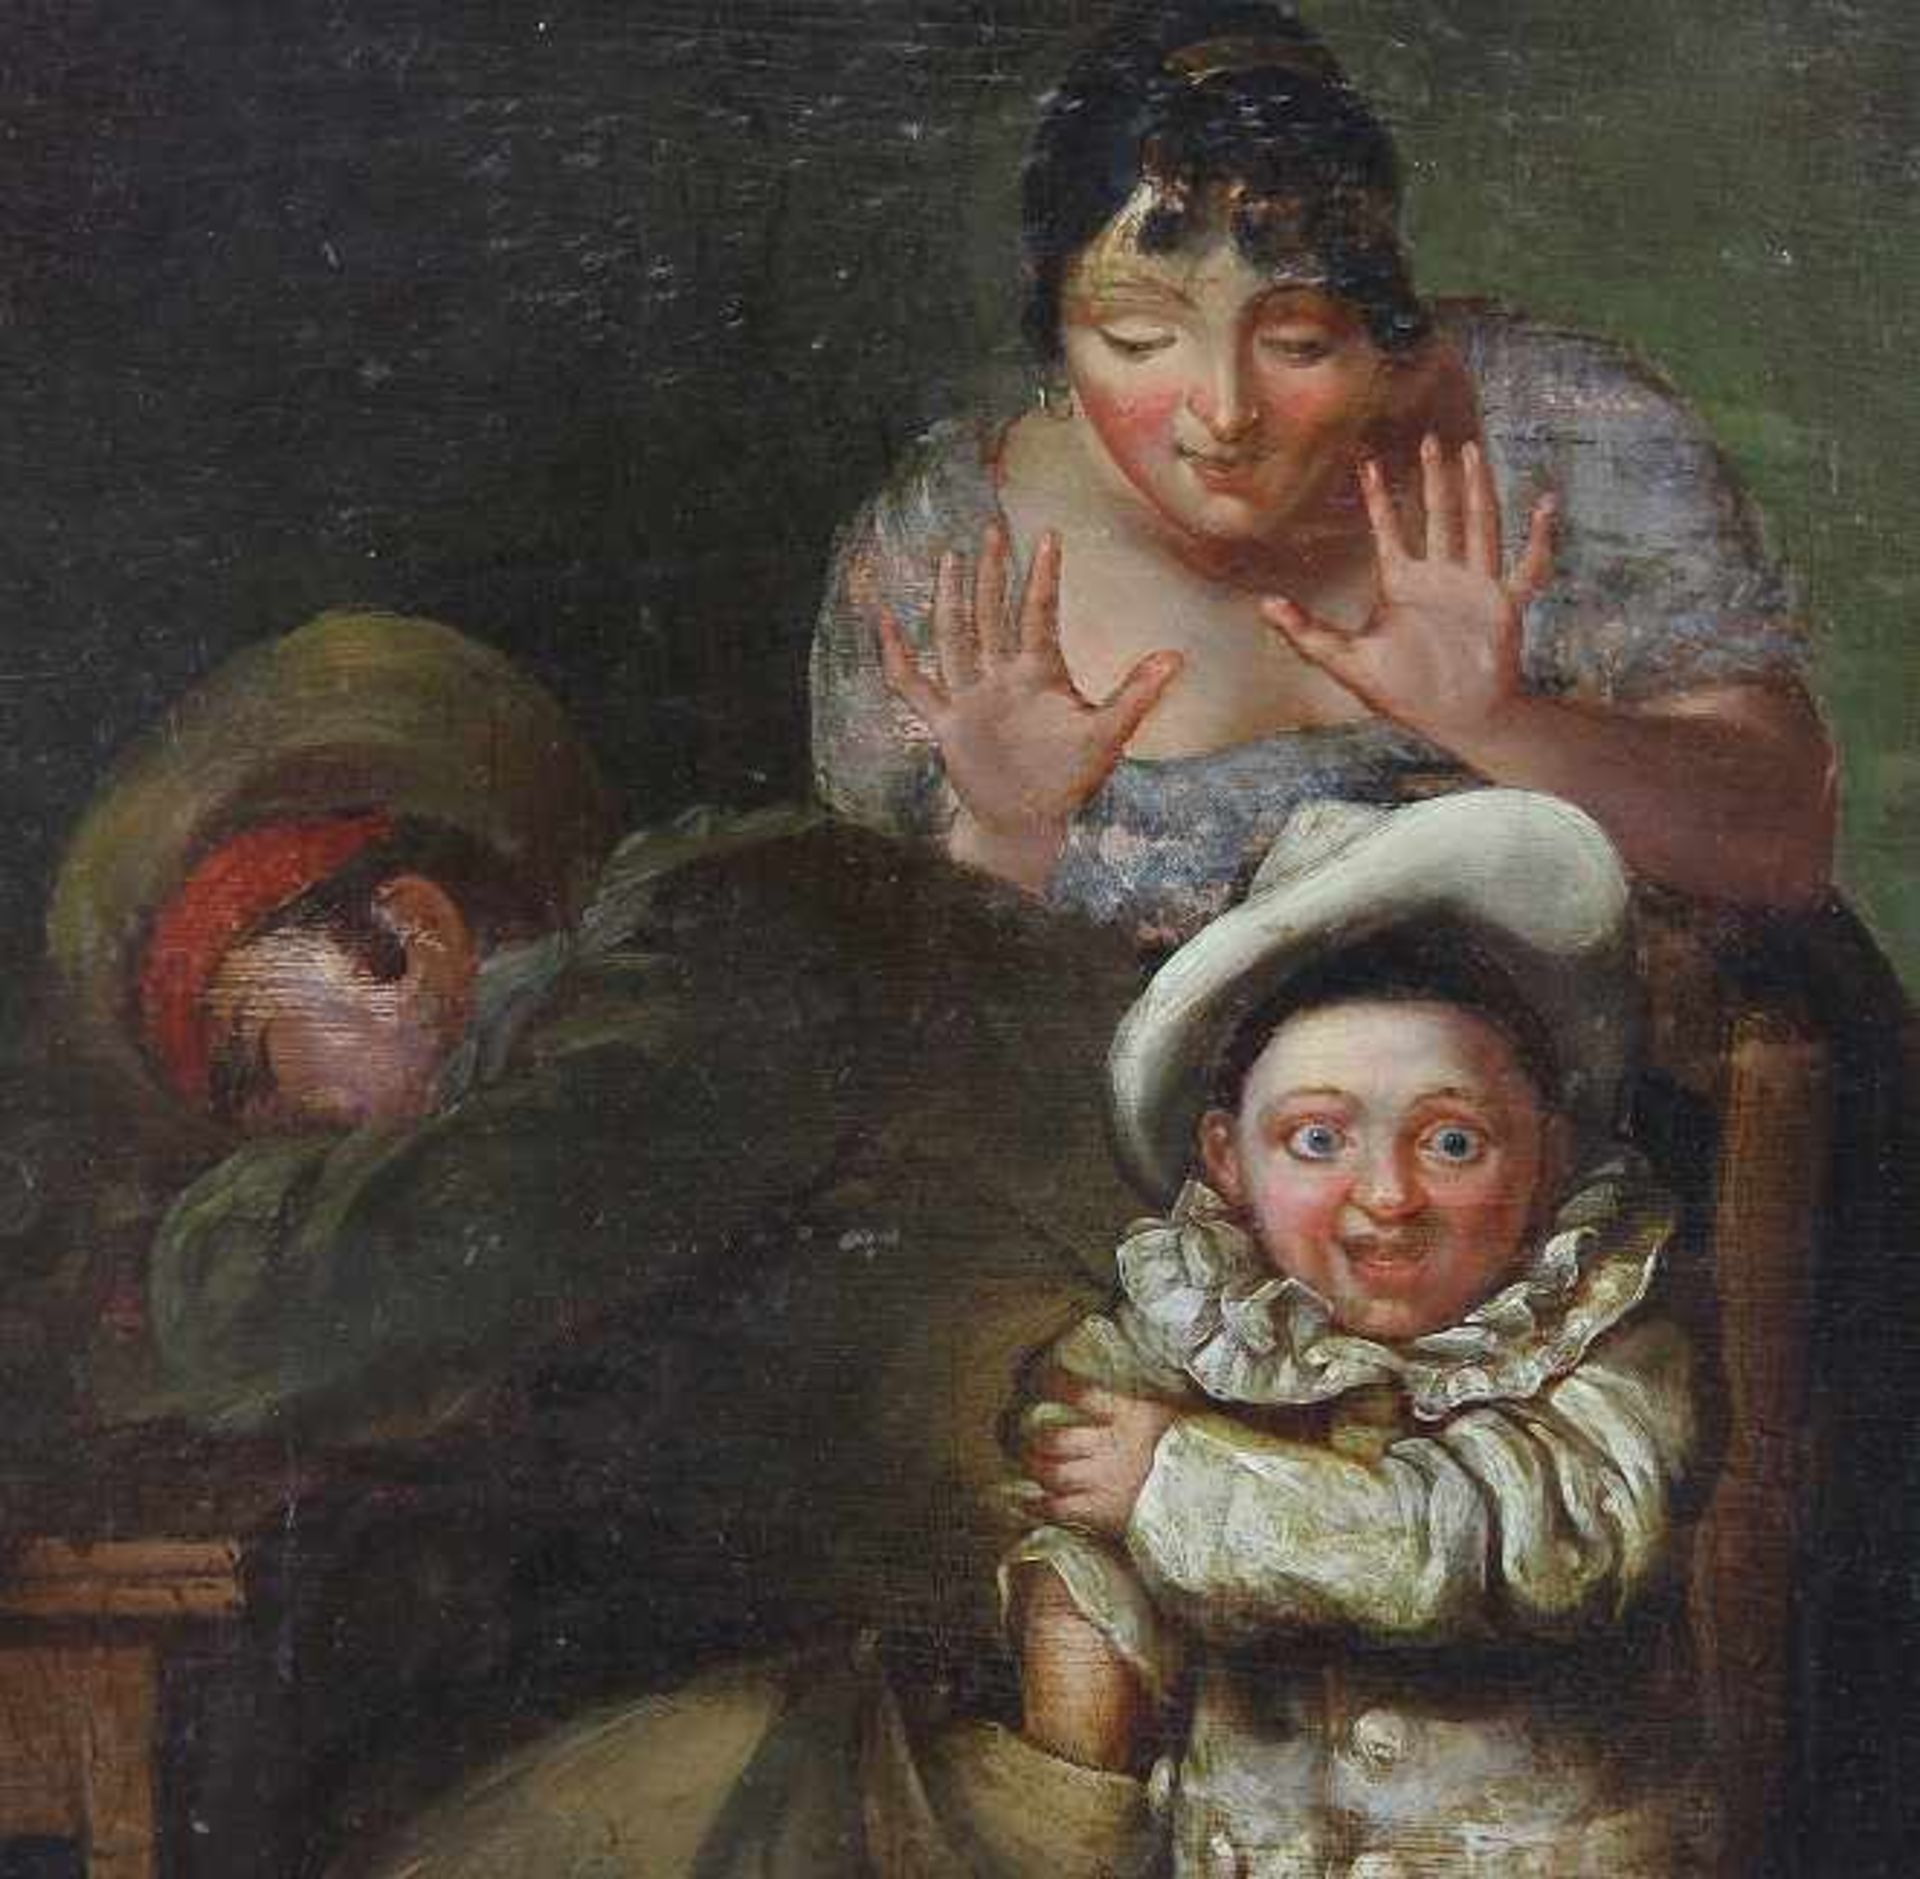 Englischer Maler des 19. Jhd. Gemälde "Auf frischer Tat ertappt", Öl auf Mahagoniplatte, Interieur - Image 3 of 3